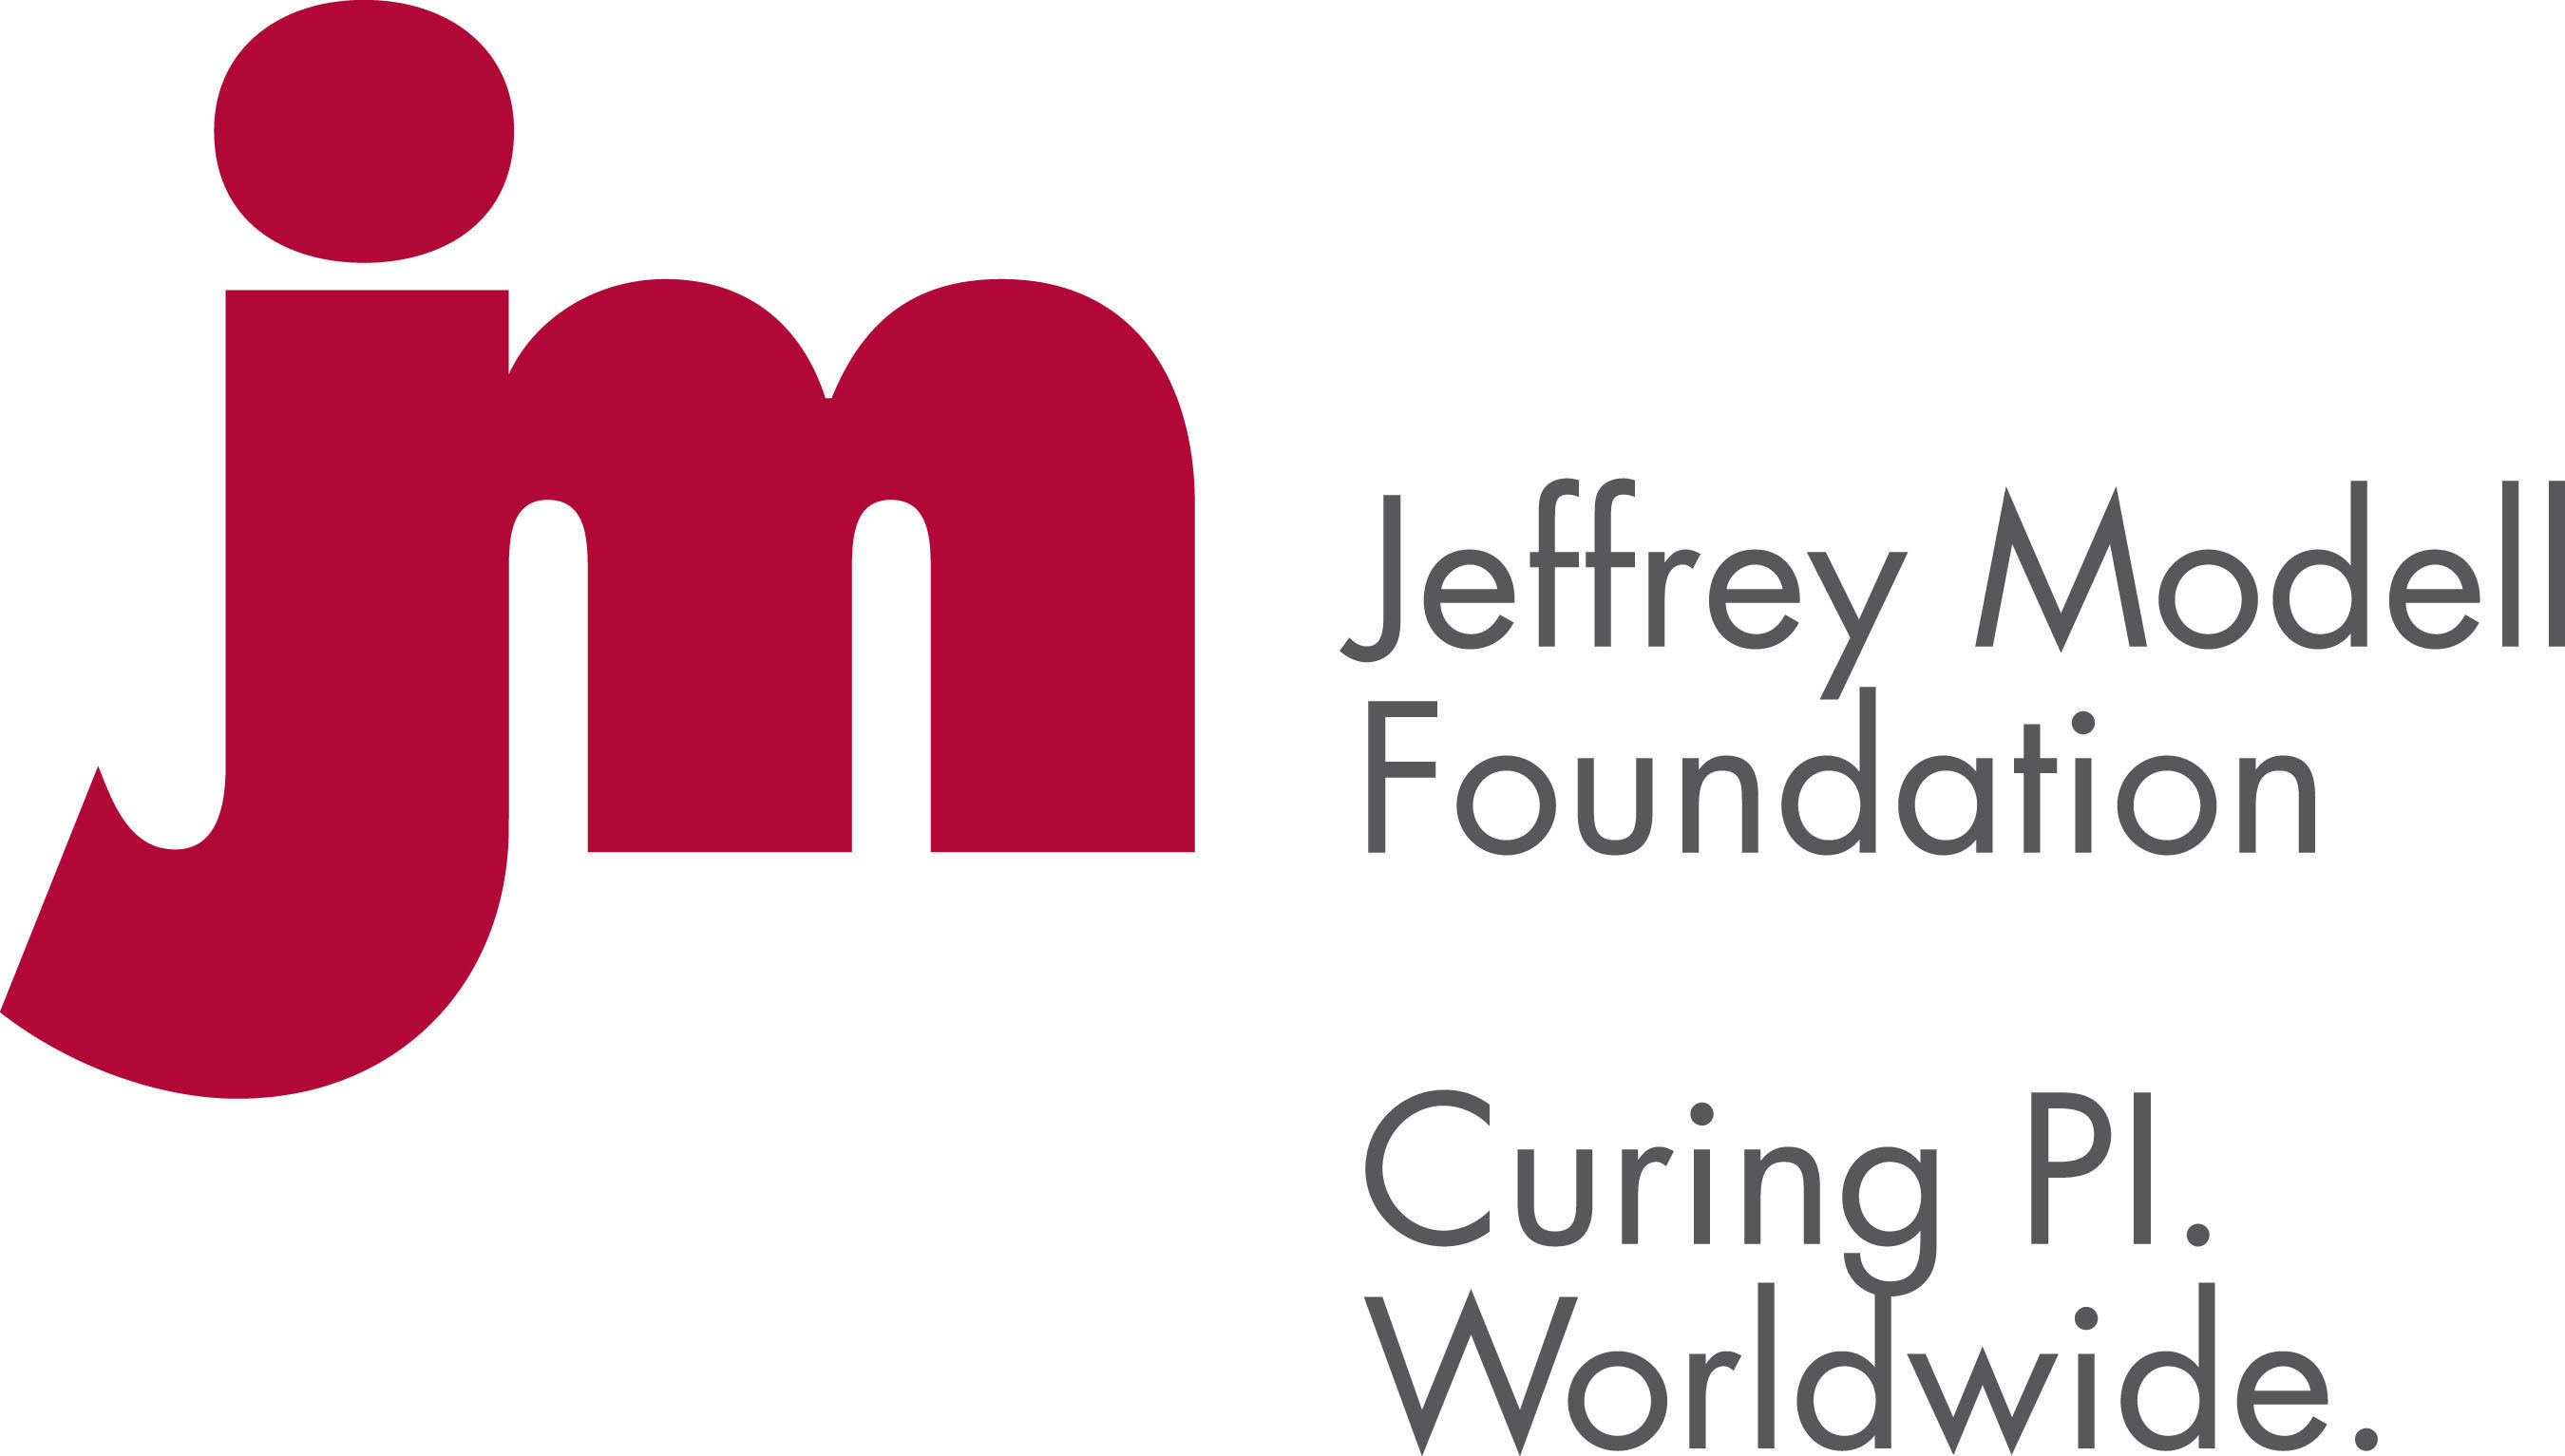 Jeffrey Modell Foundation. (PRNewsFoto/Jeffrey Modell Foundation) (PRNewsFoto/JEFFREY MODELL FOUNDATION)